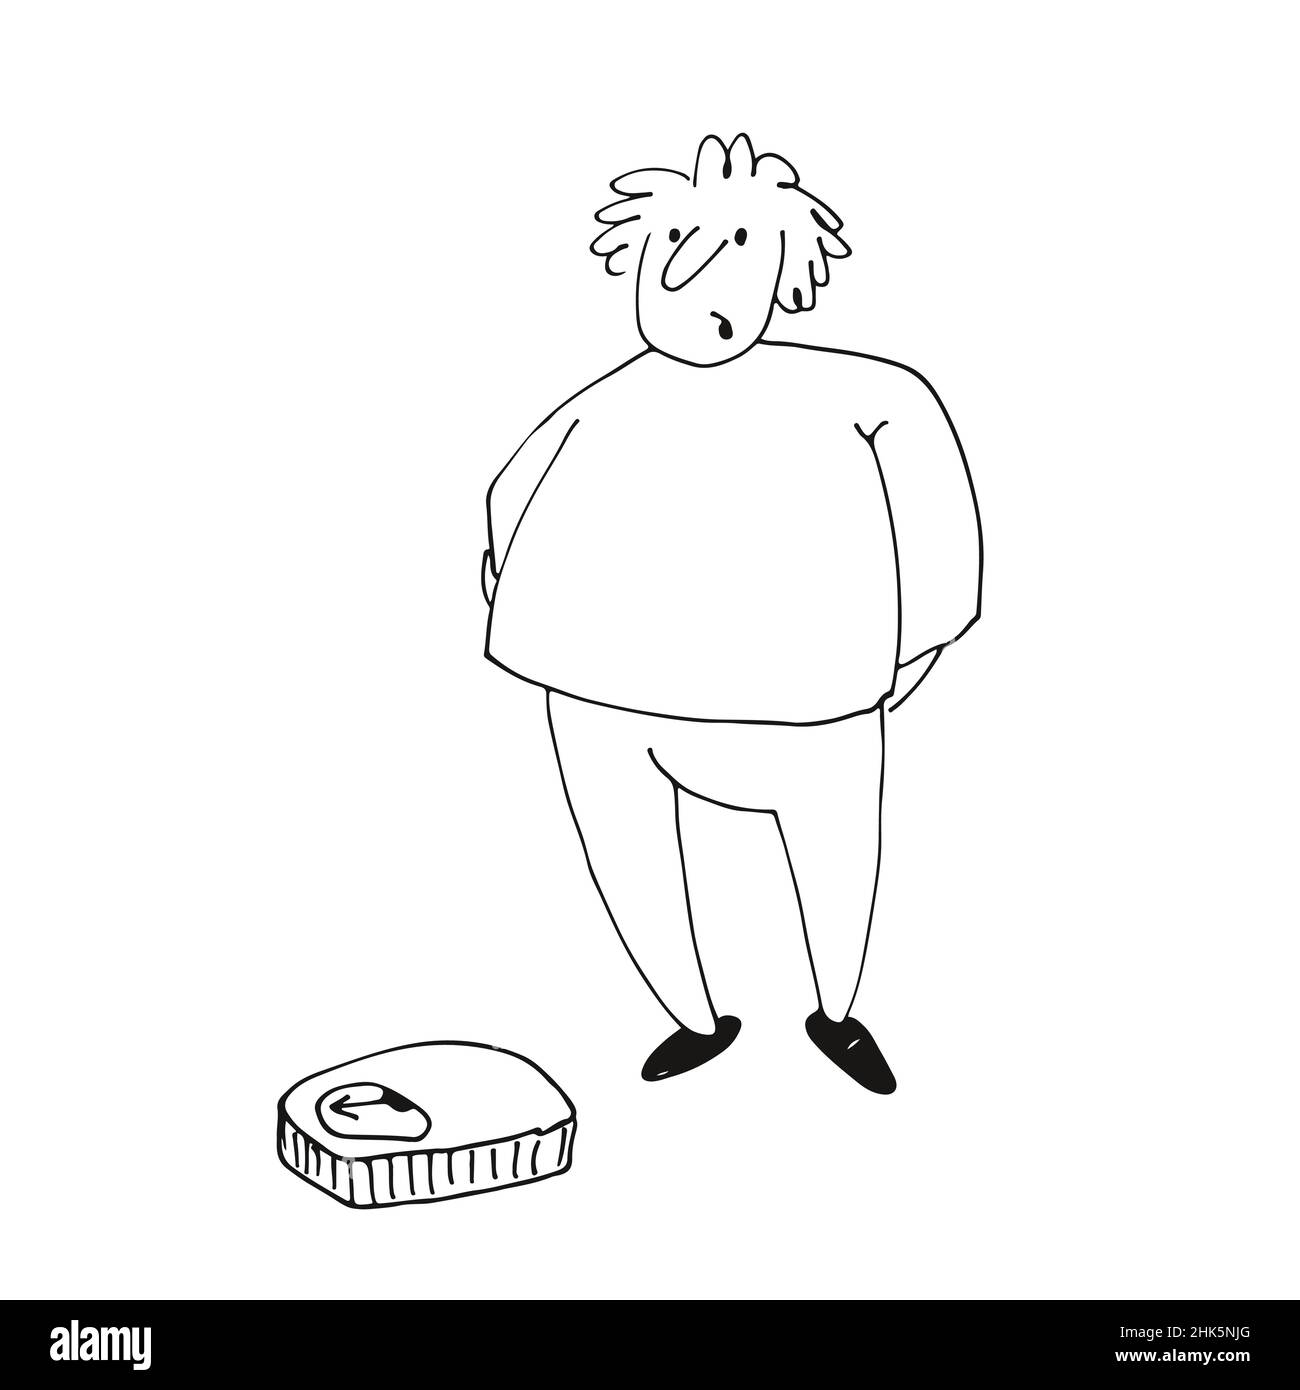 Un gros homme regarde les échelles, un personnage drôle, dessin main illustration vectorielle isolée sur un fond blanc Illustration de Vecteur